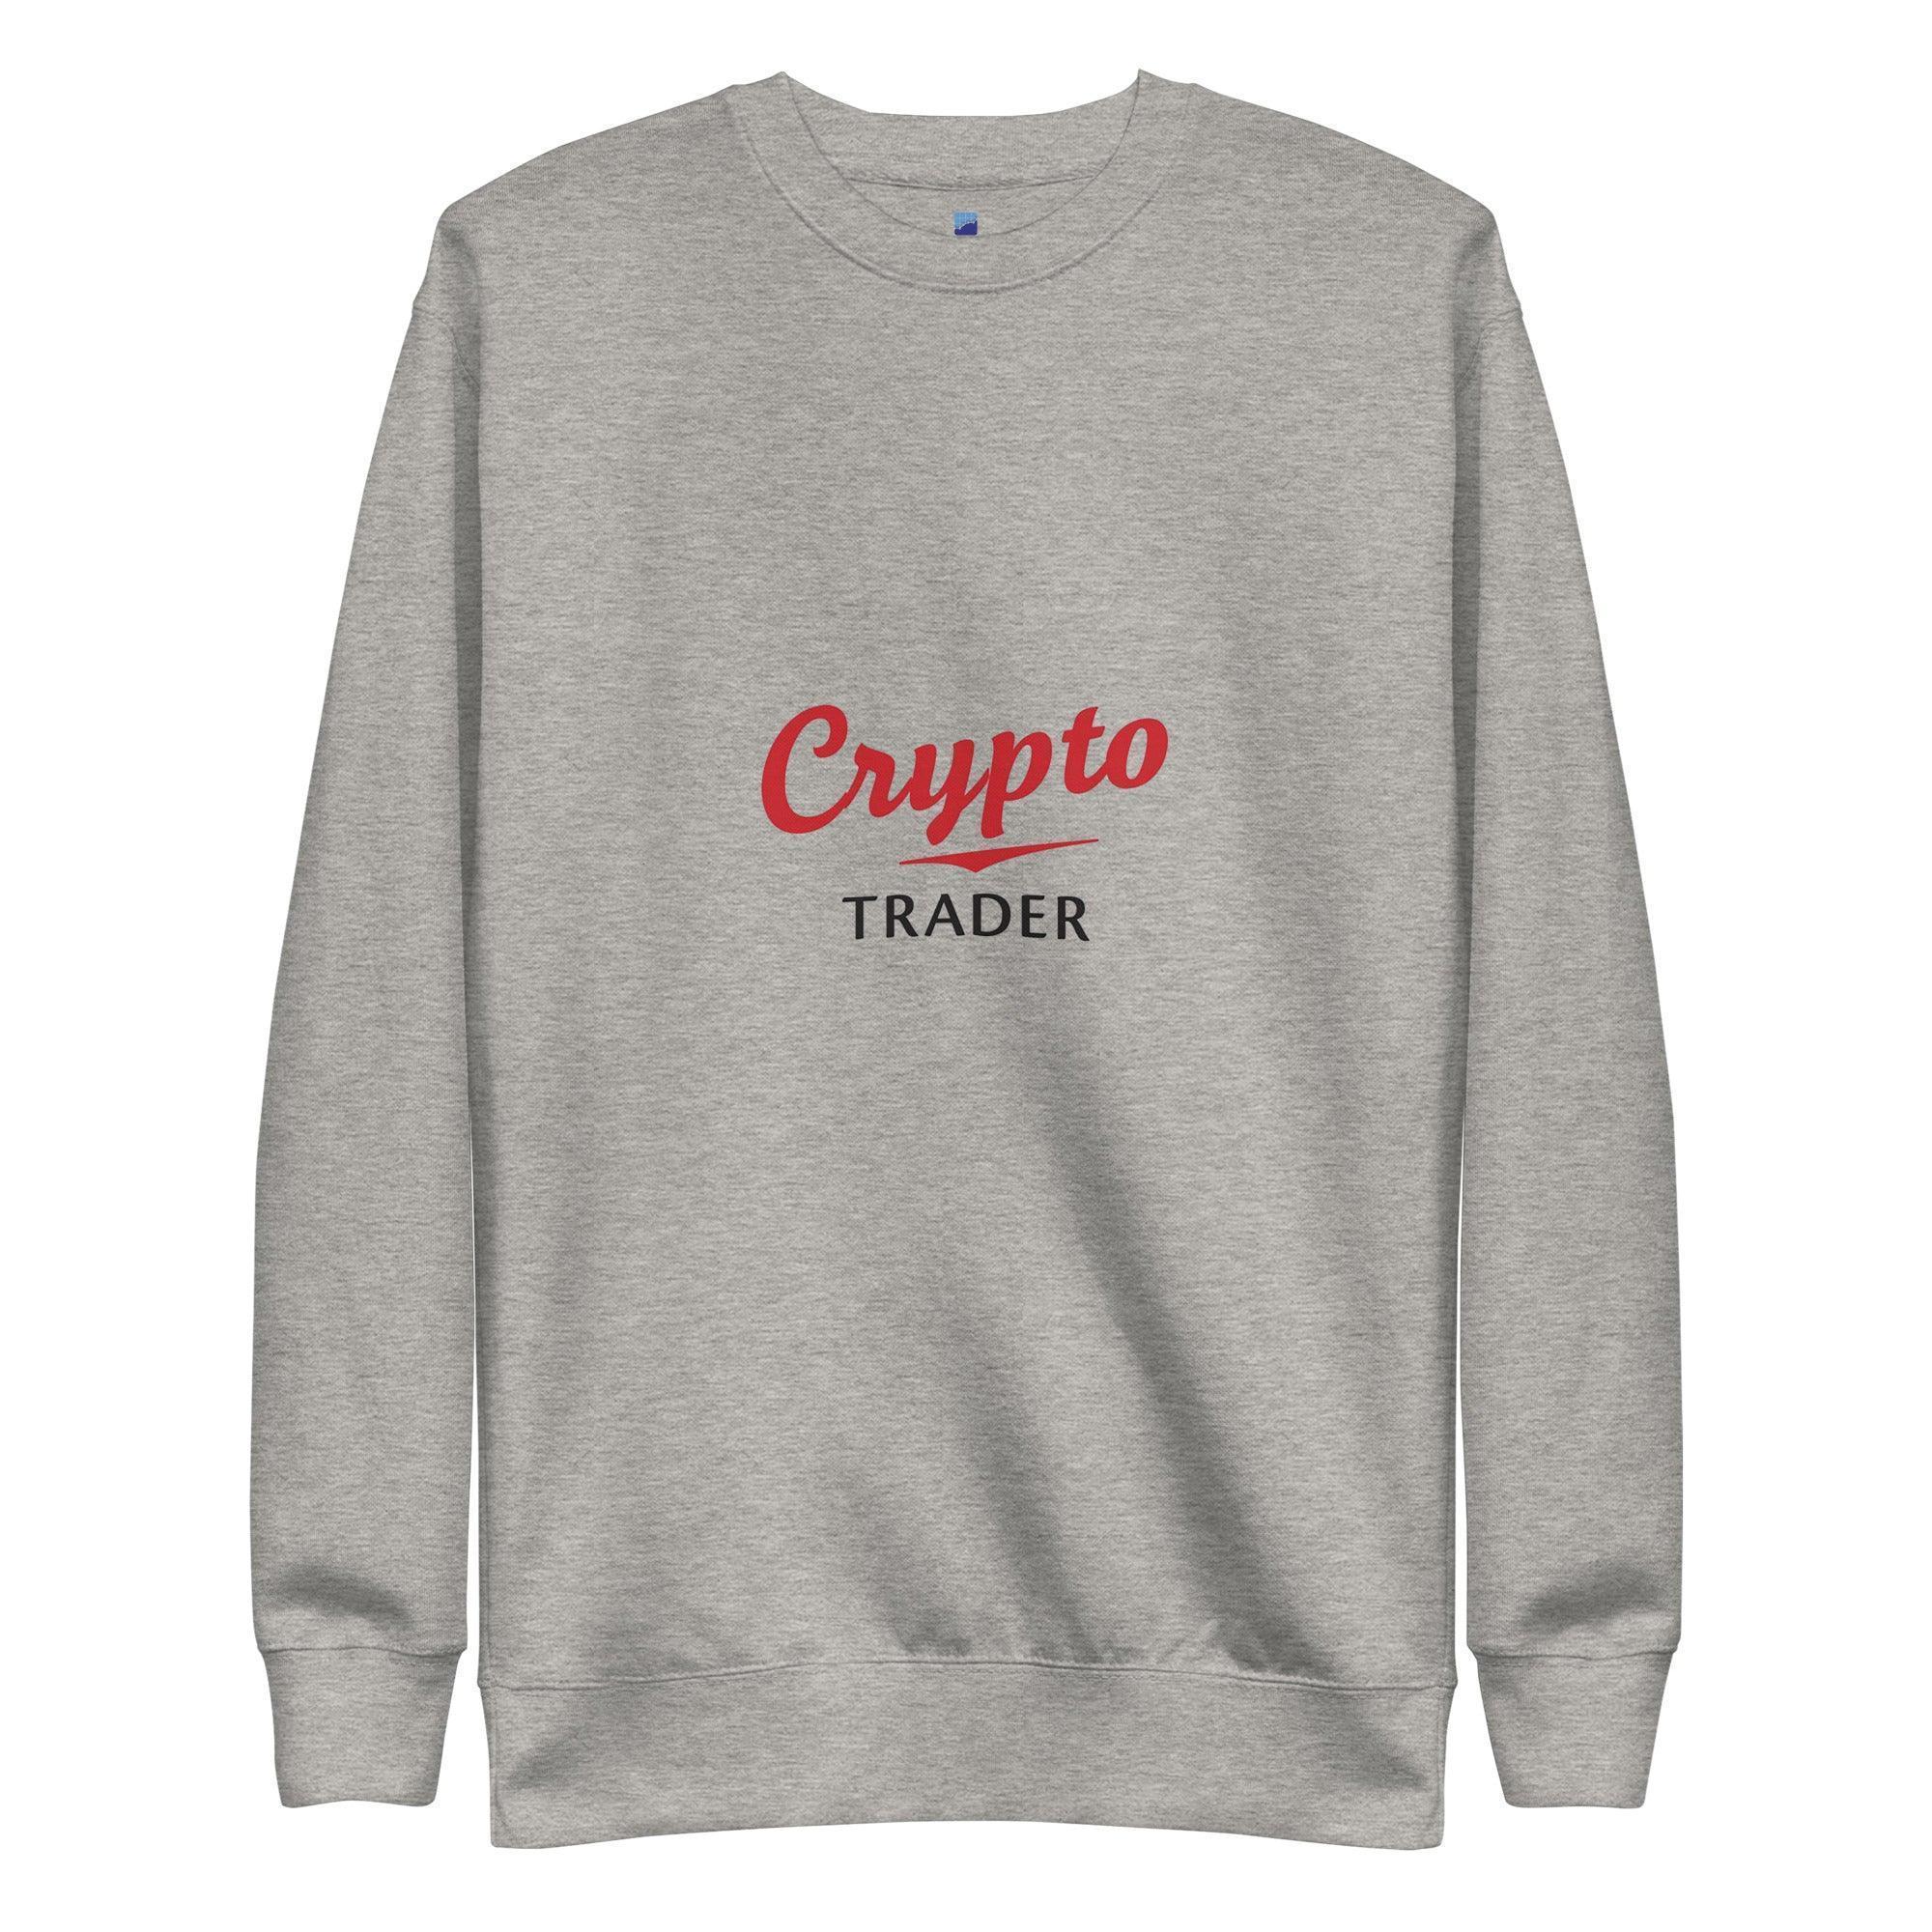 Crypto Trader Sweatshirt - InvestmenTees